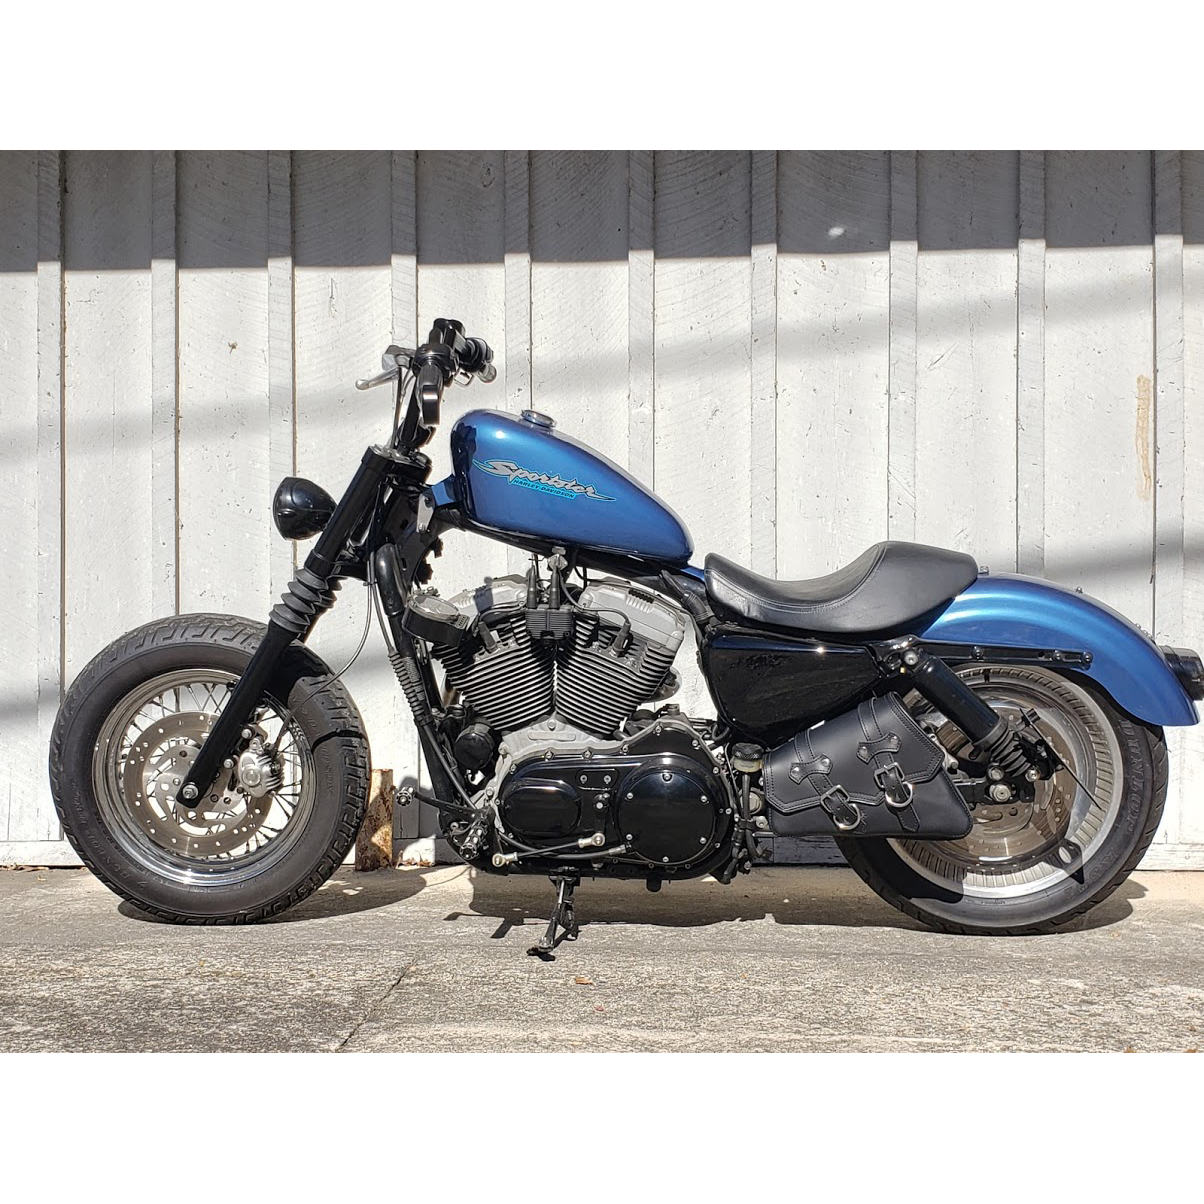 Gas Tank Lift Kit for Harley Sportster Models